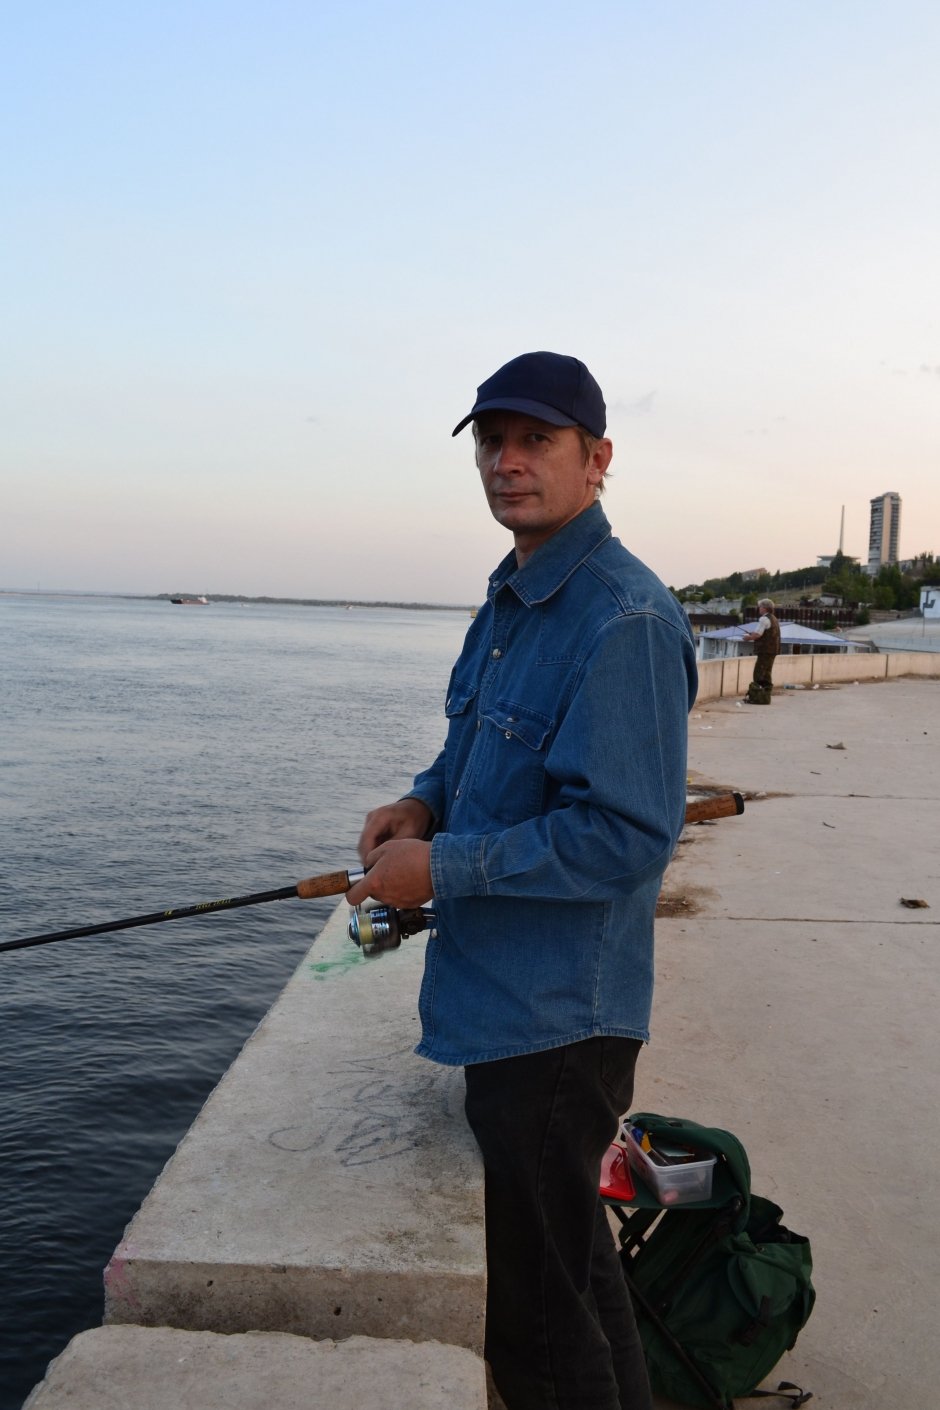 Сергей Лексуков, 46 лет, инженер: "Вечером особенно хорошо ловится судак. Сегодня пришел на Волгу отдохнуть, расслабиться после работы, удочку покидать. По рыбке в день вытаскиваю".